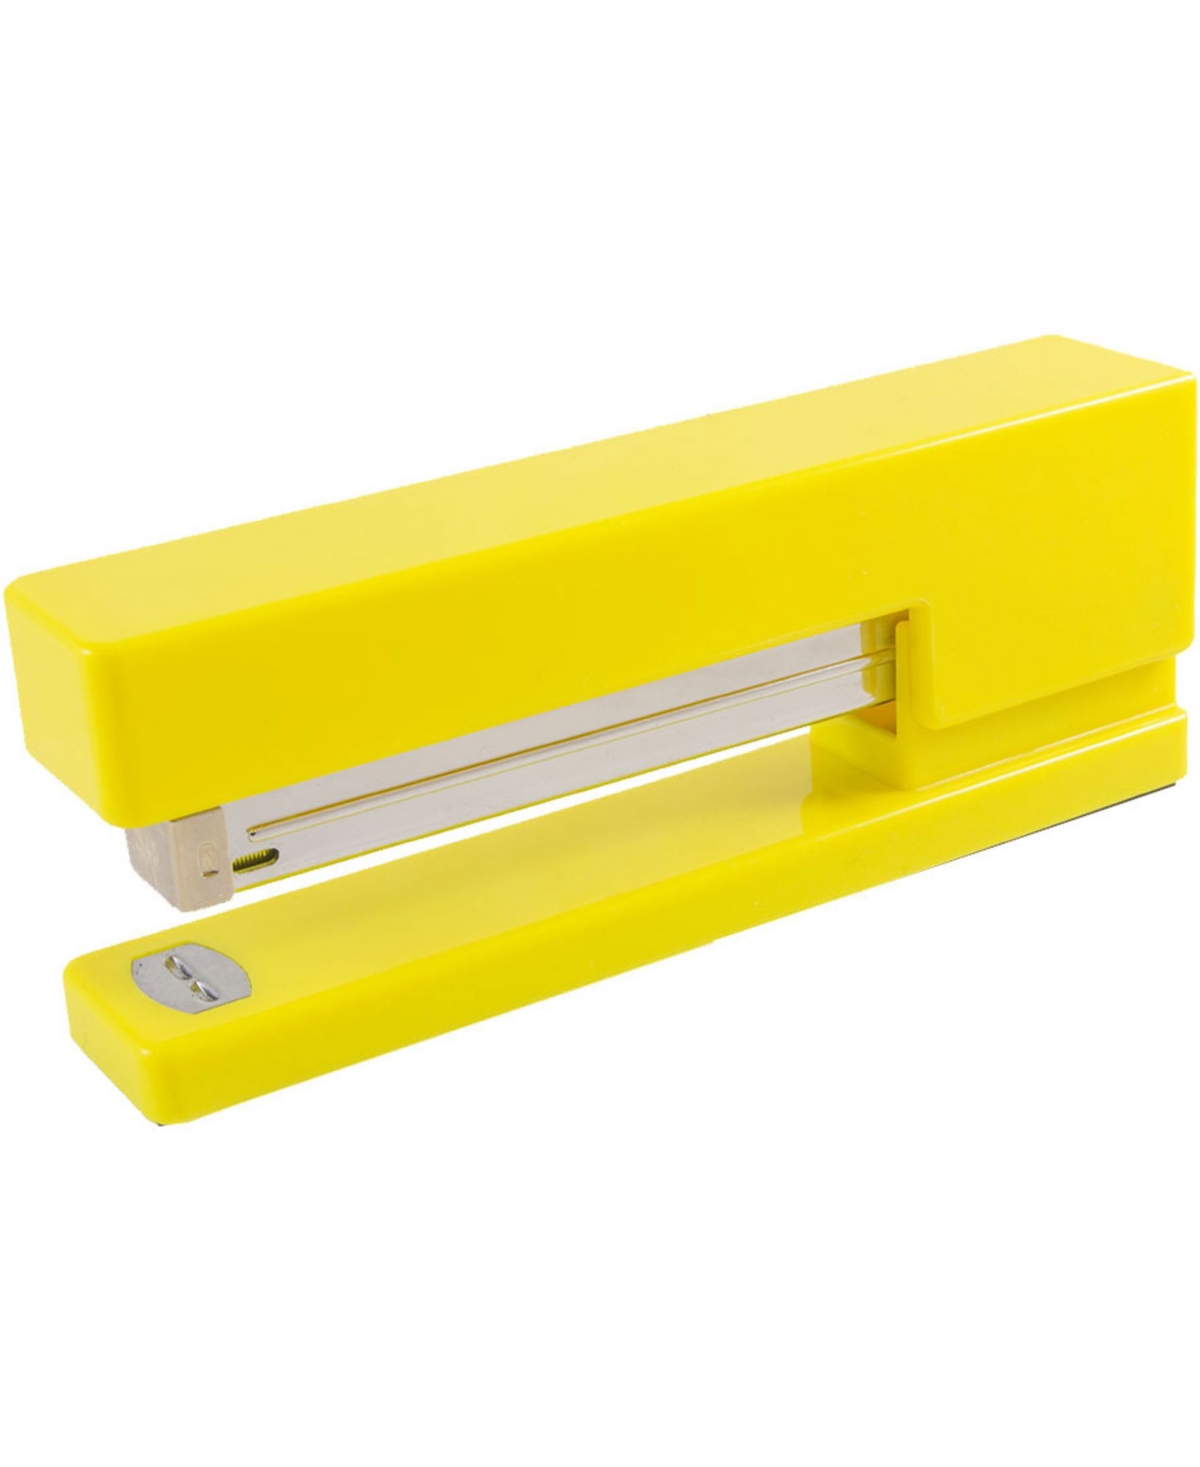 Jam Paper Modern Desk Stapler In Yellow